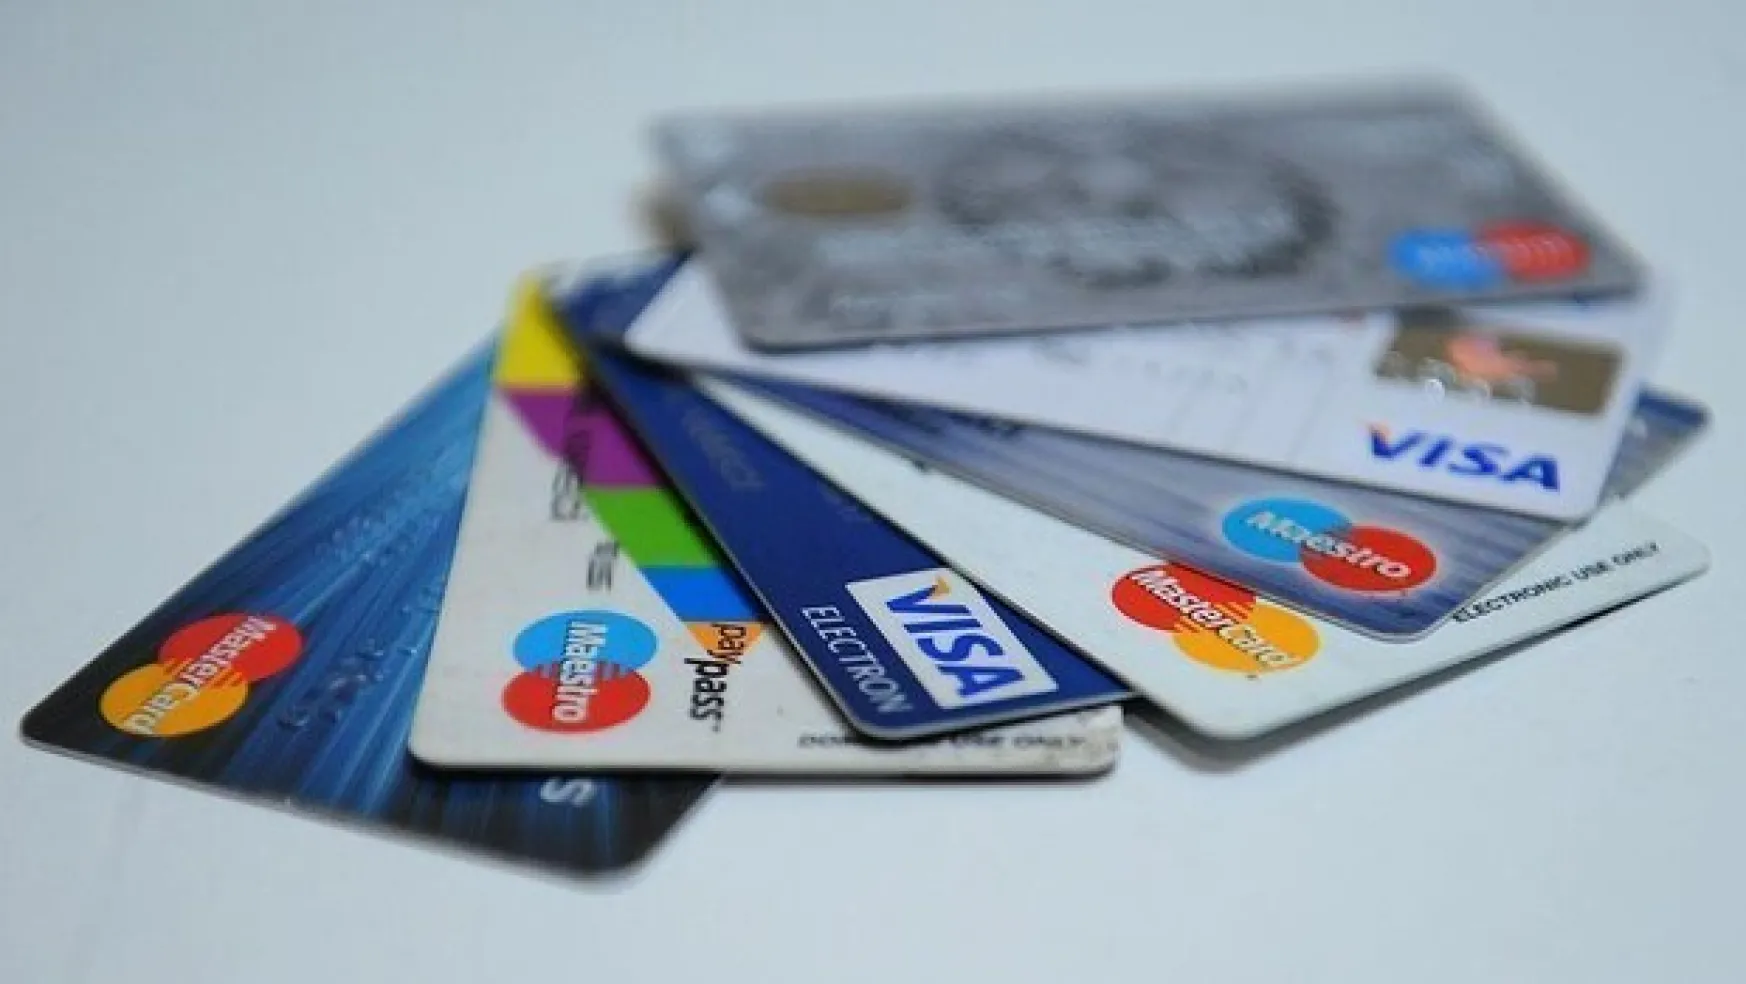 Kredi kartı kullananlar buna dikkat!